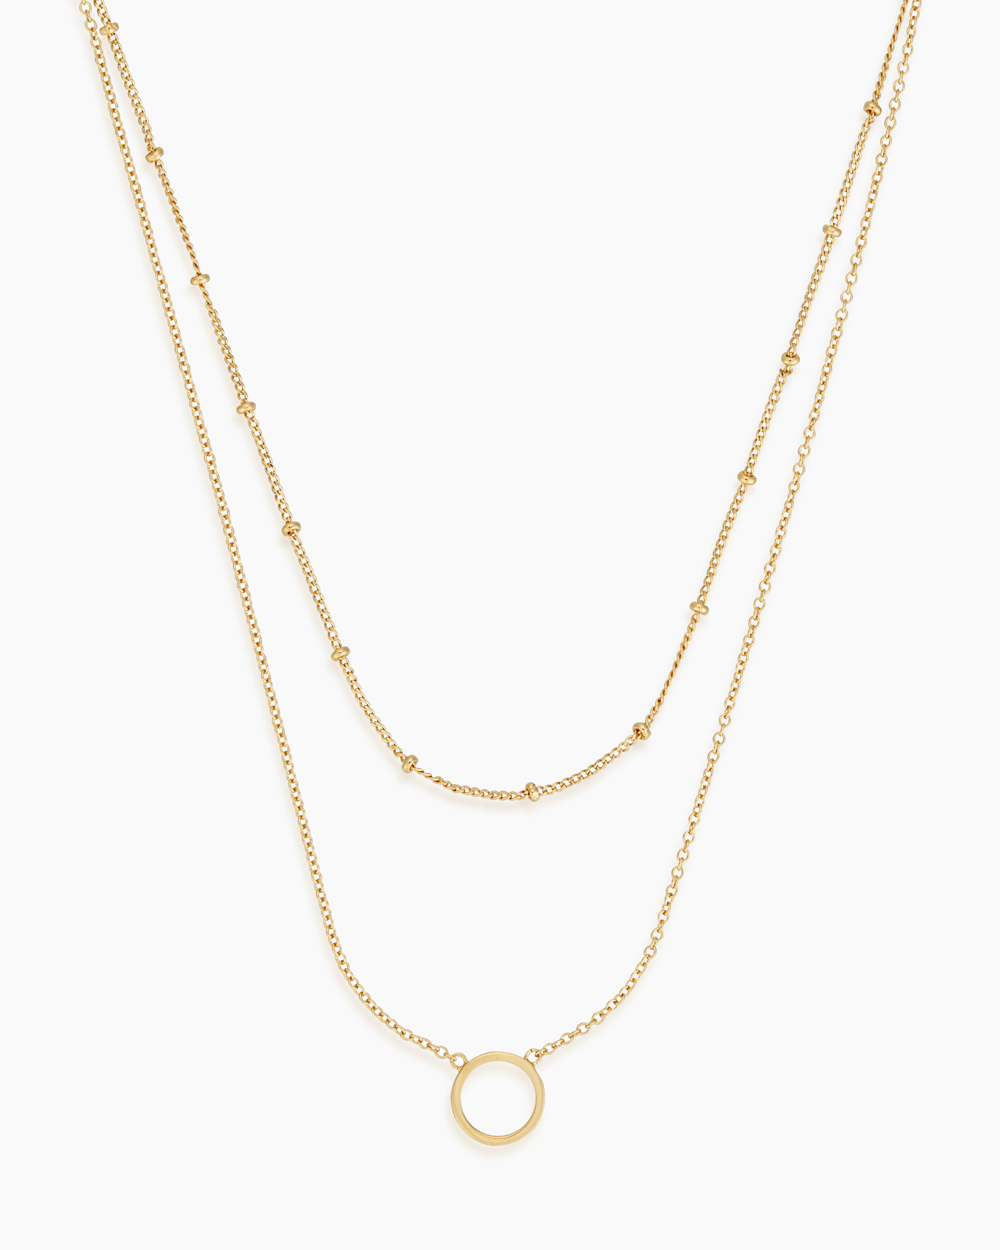 Kyla Gold Necklace